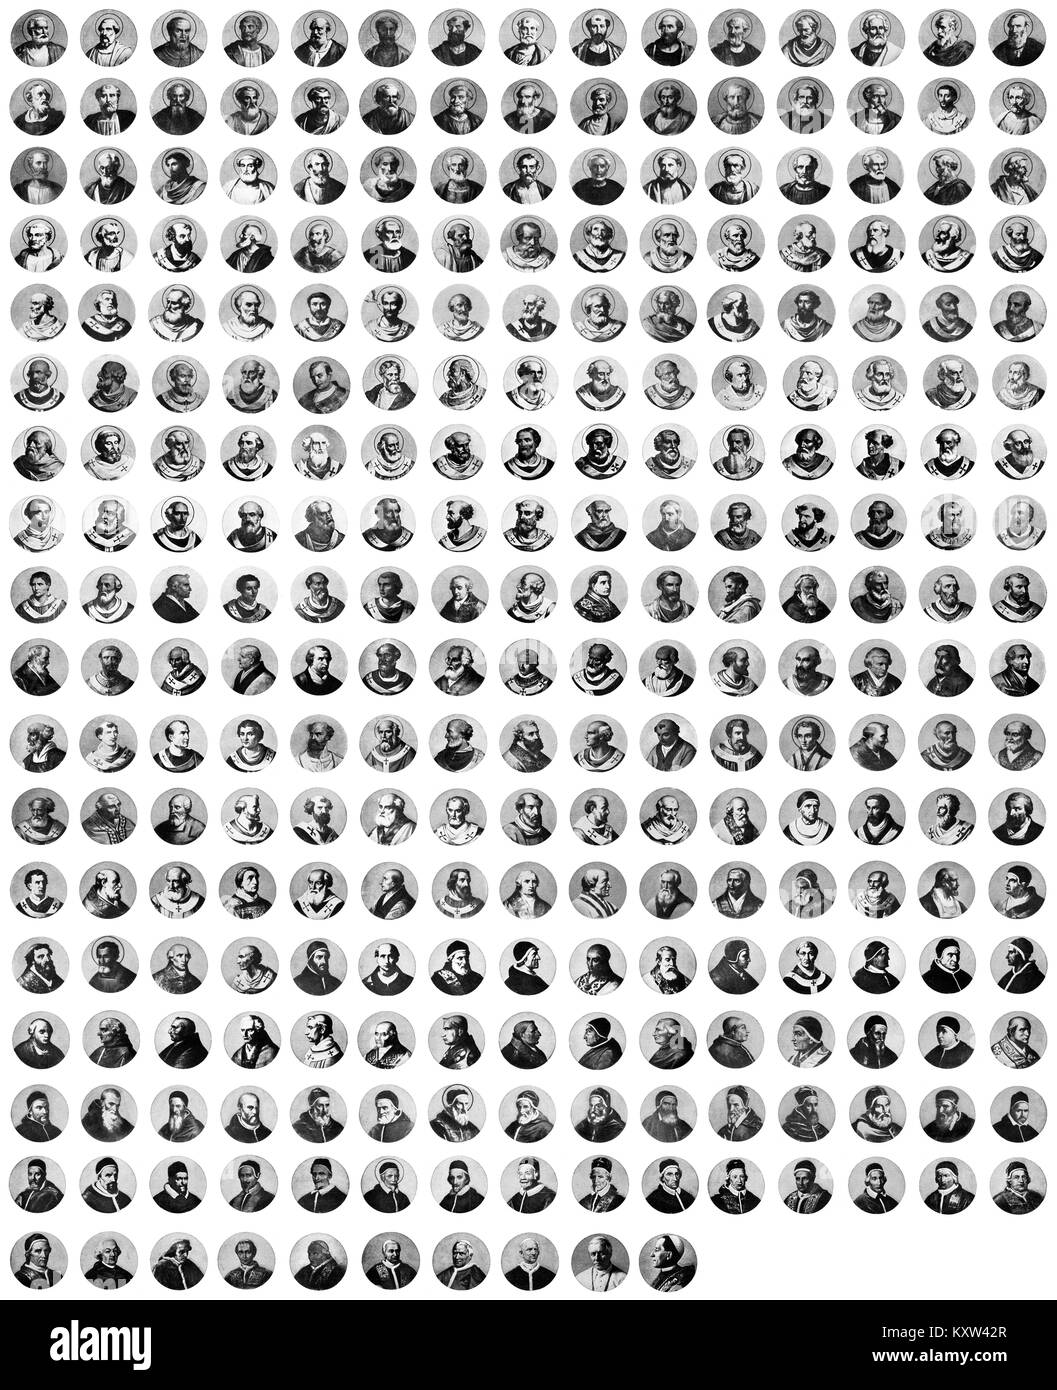 Portraits de tous les papes de l'Église catholique de 30 à 1914 Banque D'Images